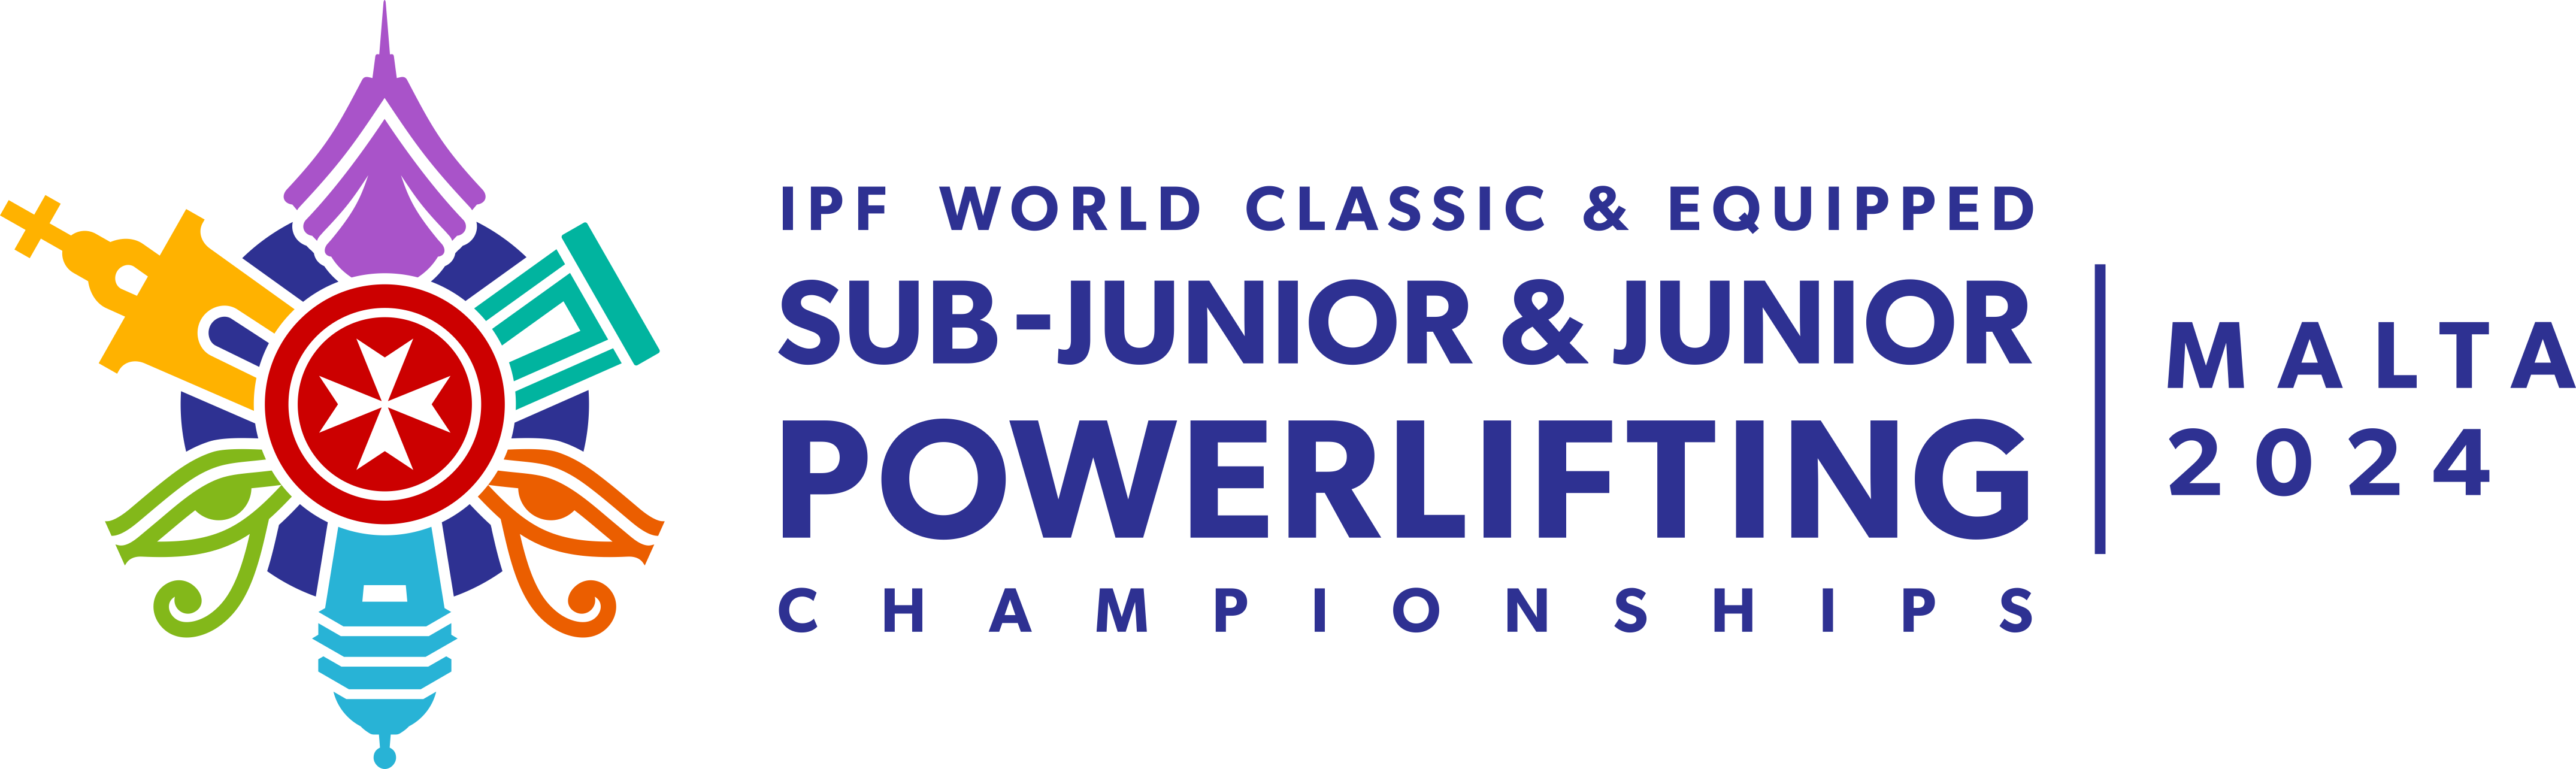 IFP World Classic & Equipped SubJunior & Junior